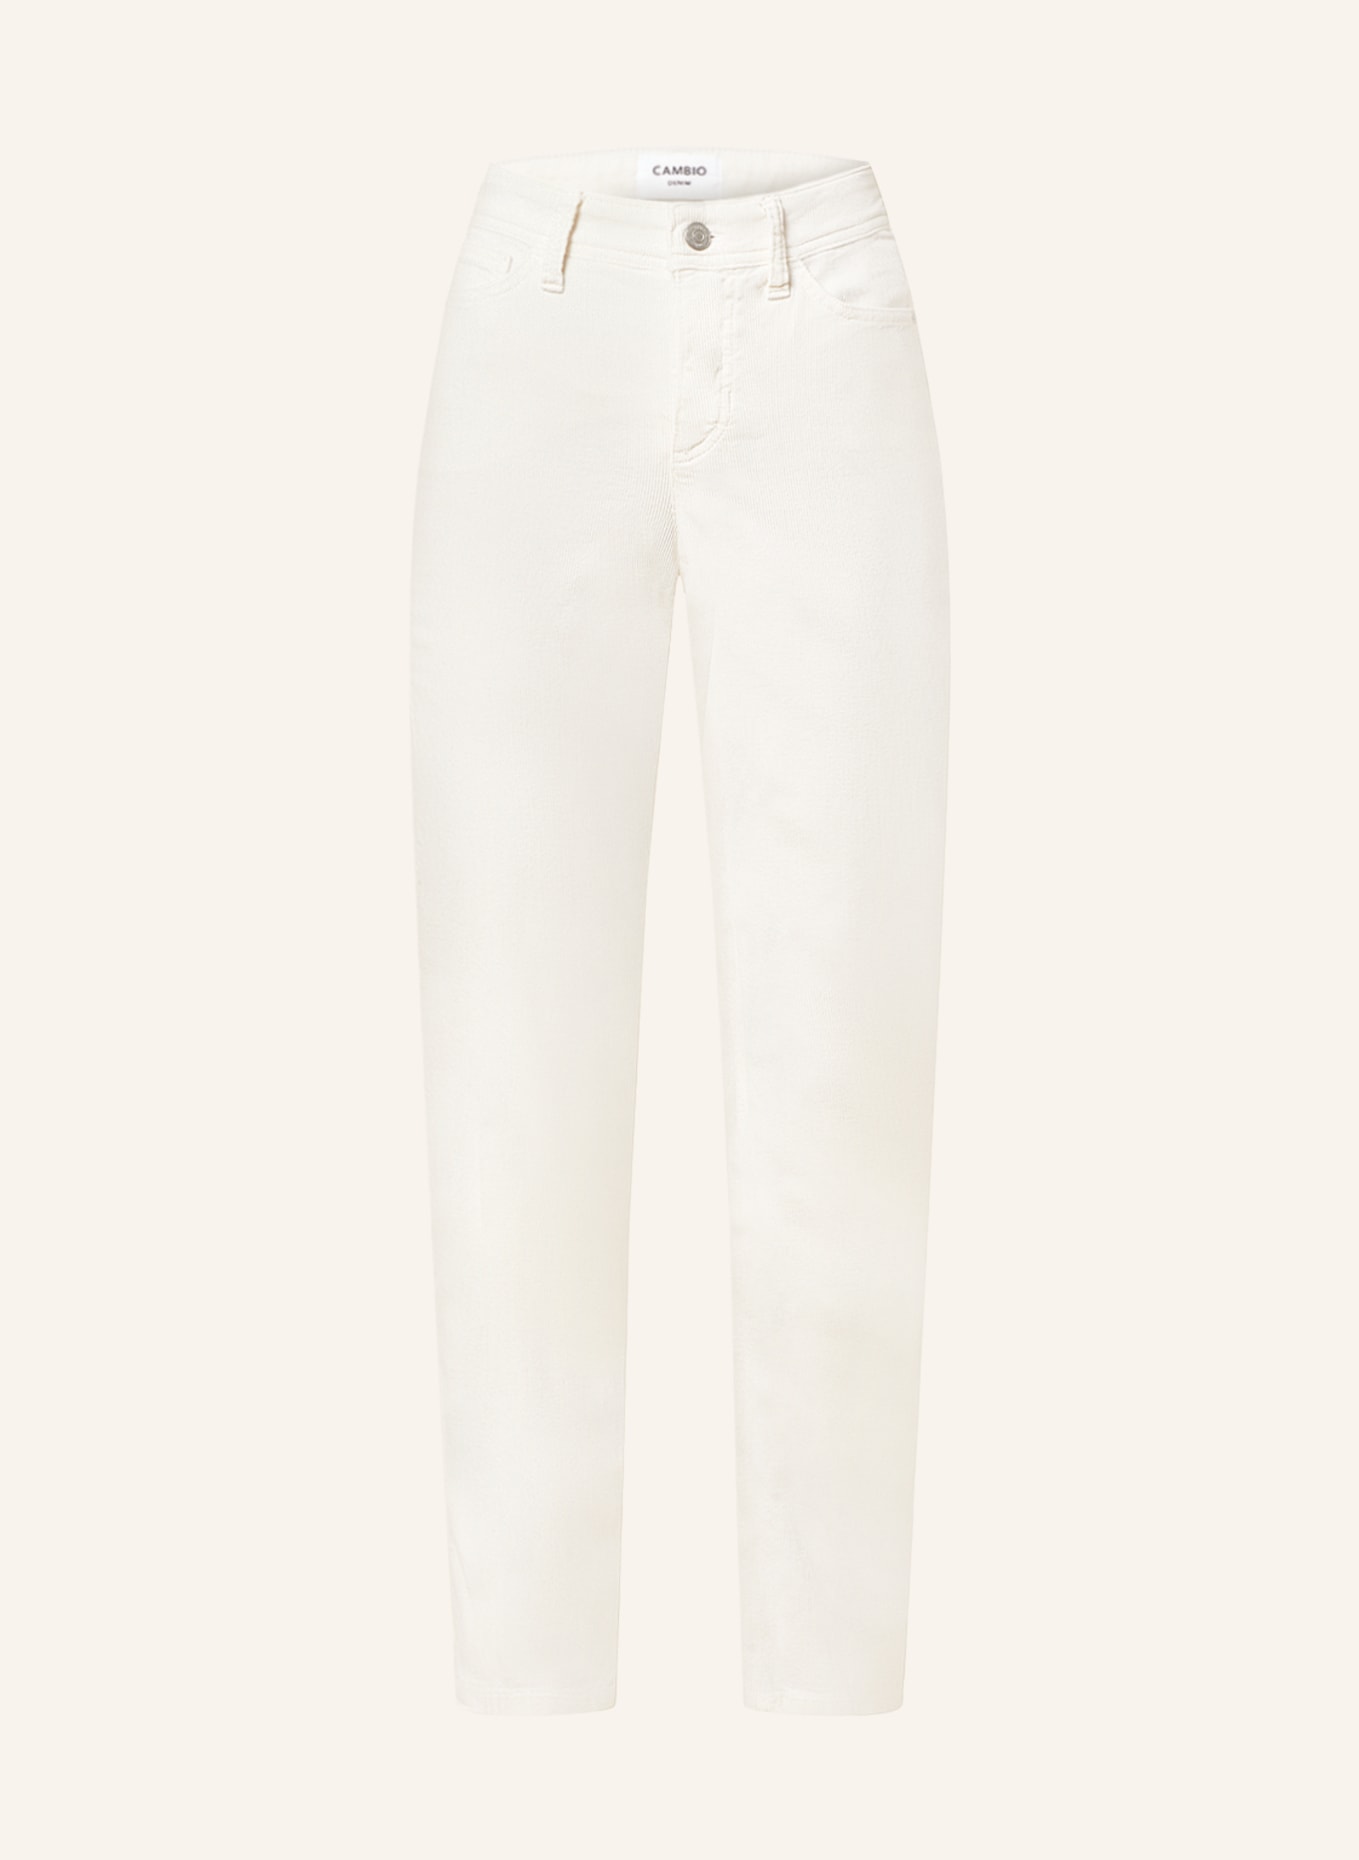 CAMBIO Corduroy trousers PIPER, Color: CREAM (Image 1)